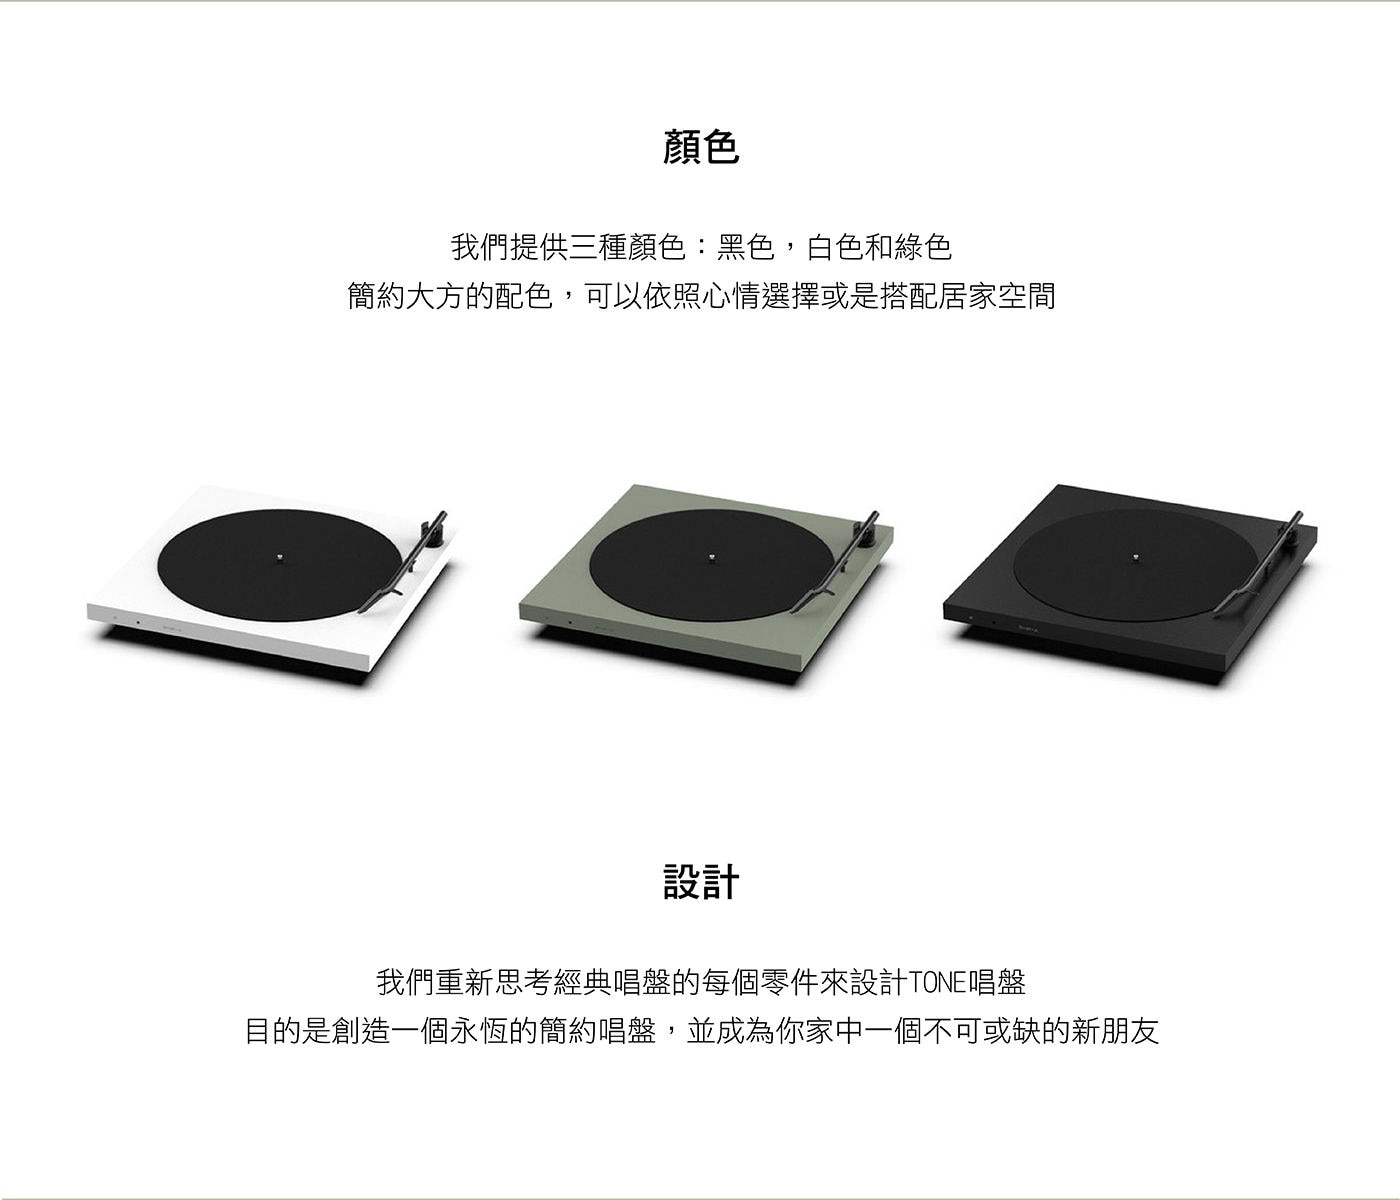 TONE Factory 藍牙黑膠唱盤 含防塵蓋三種顏色簡約大方配色依照心情/居家空間選擇，設計一個永恆的簡約唱盤